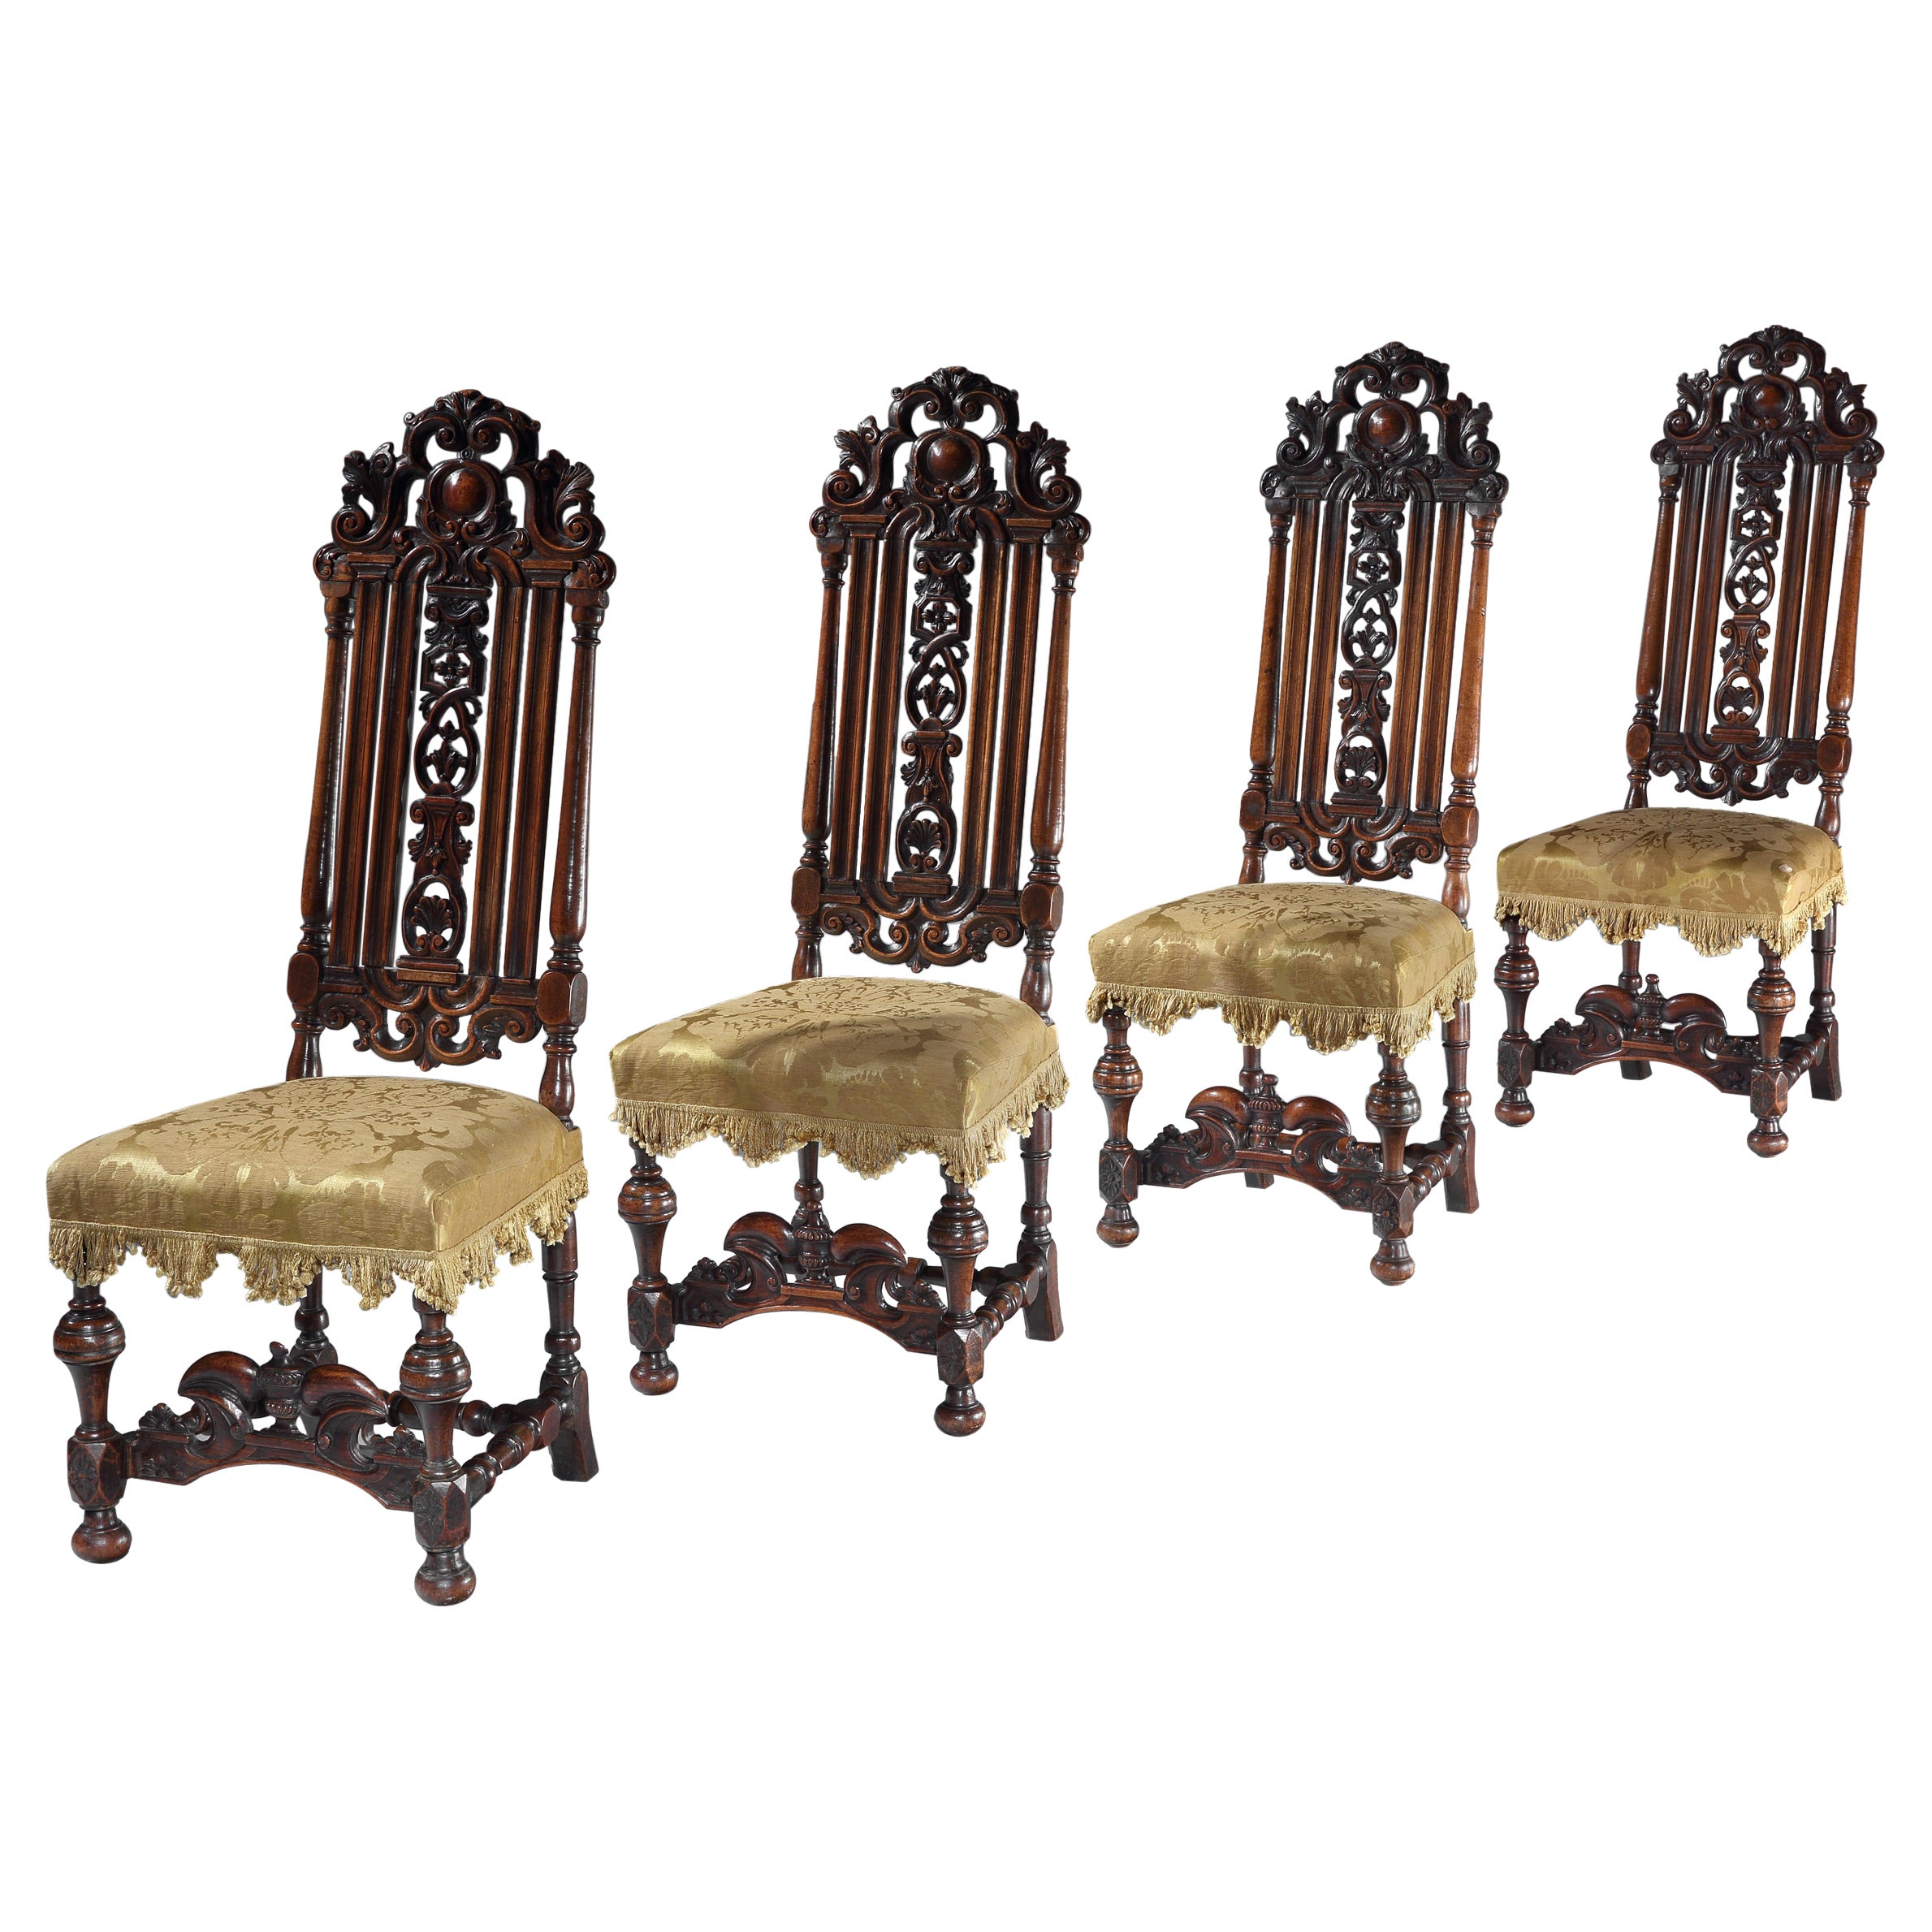 Vier Stühle, 4 Stühle, Nussbaum, geschnitzt, Marot, 18 Jahrhundert, Seidendamast, gelb gepolstert